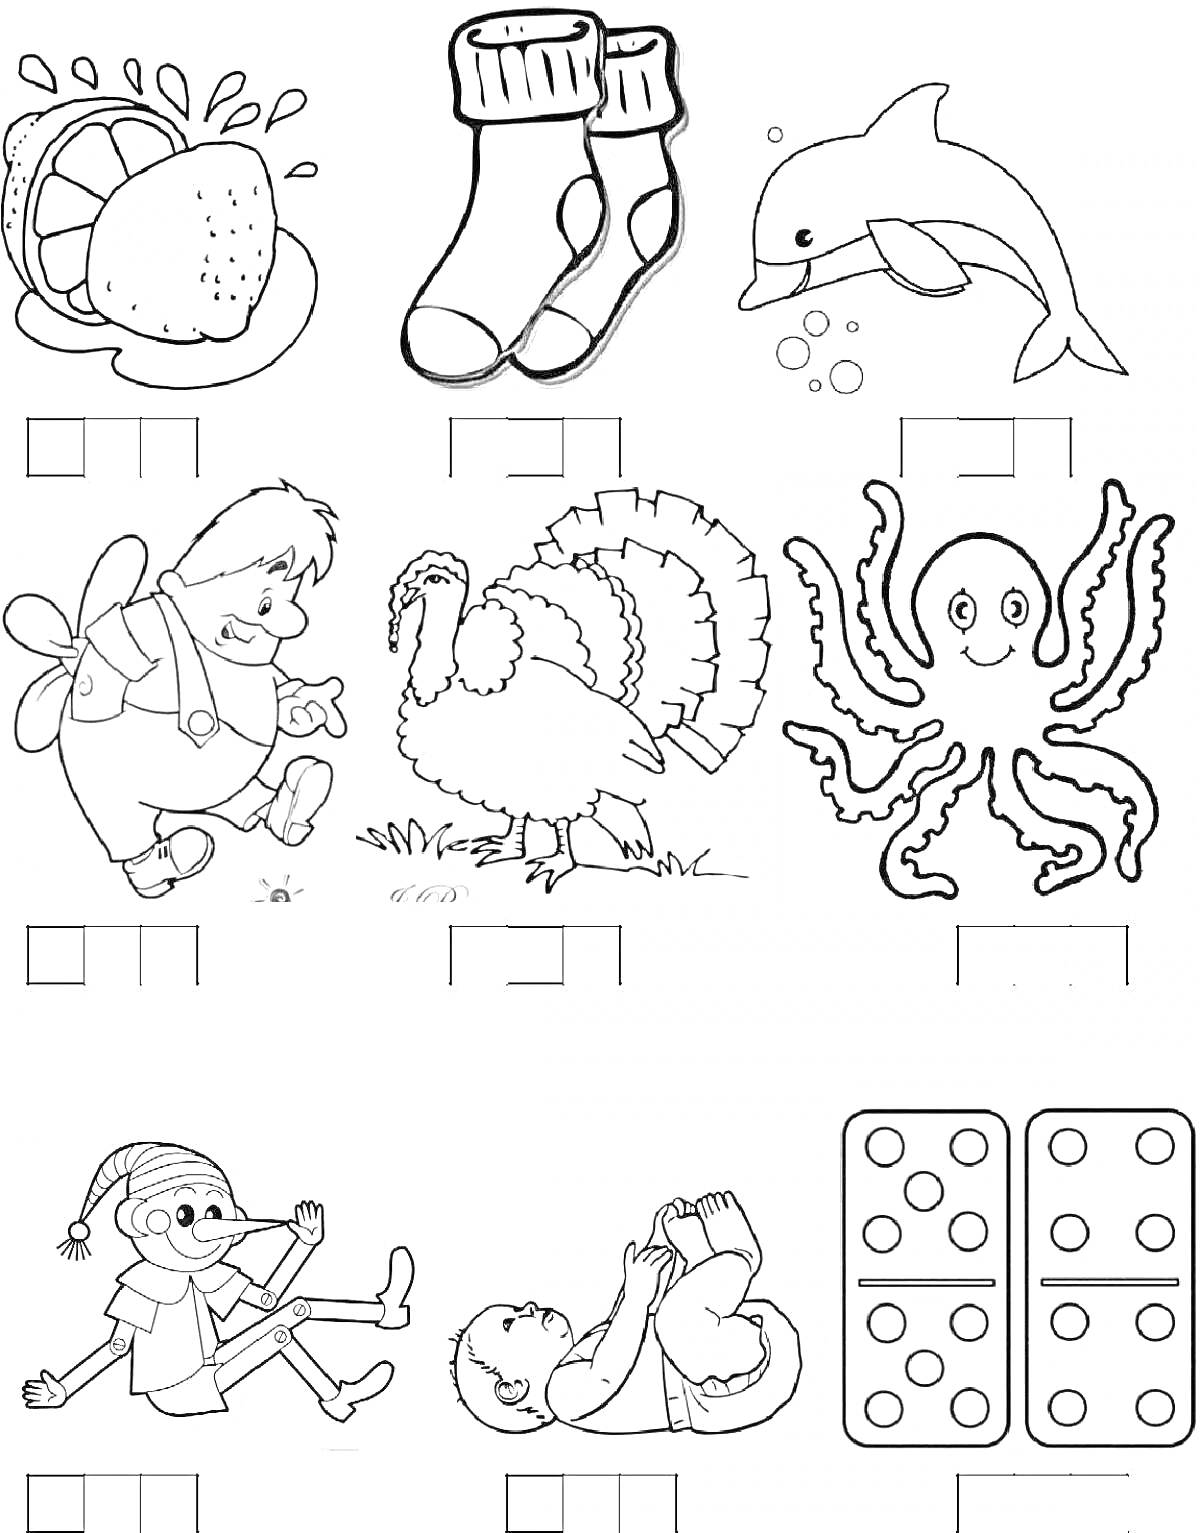 Раскраска Раскраска с изображением клубники, носков, дельфина, ребенок с крылышками, индейка, осьминог, Буратино, ребенок, который играет, домино